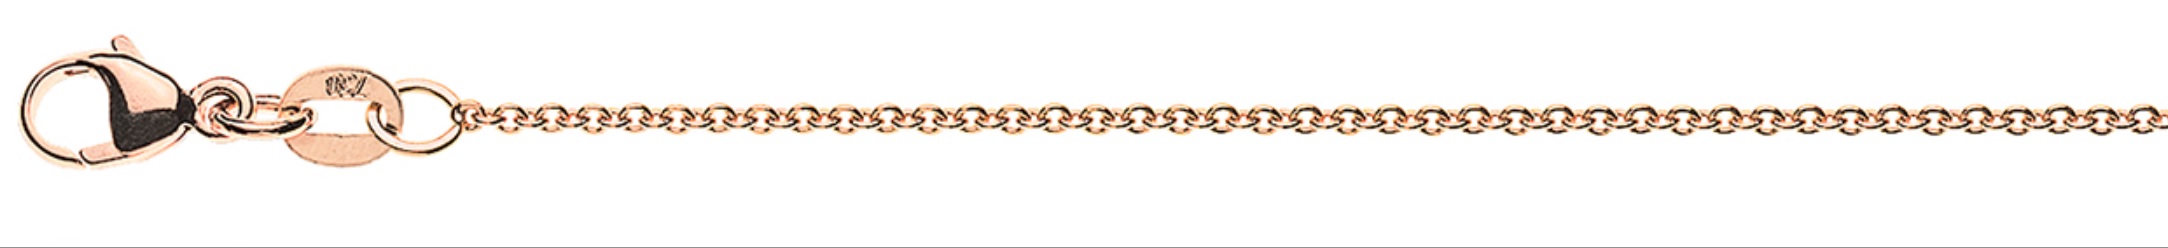 AURONOS Prestige Bracelet Round Anchor 18K Rose Gold 24cm 1.3mm